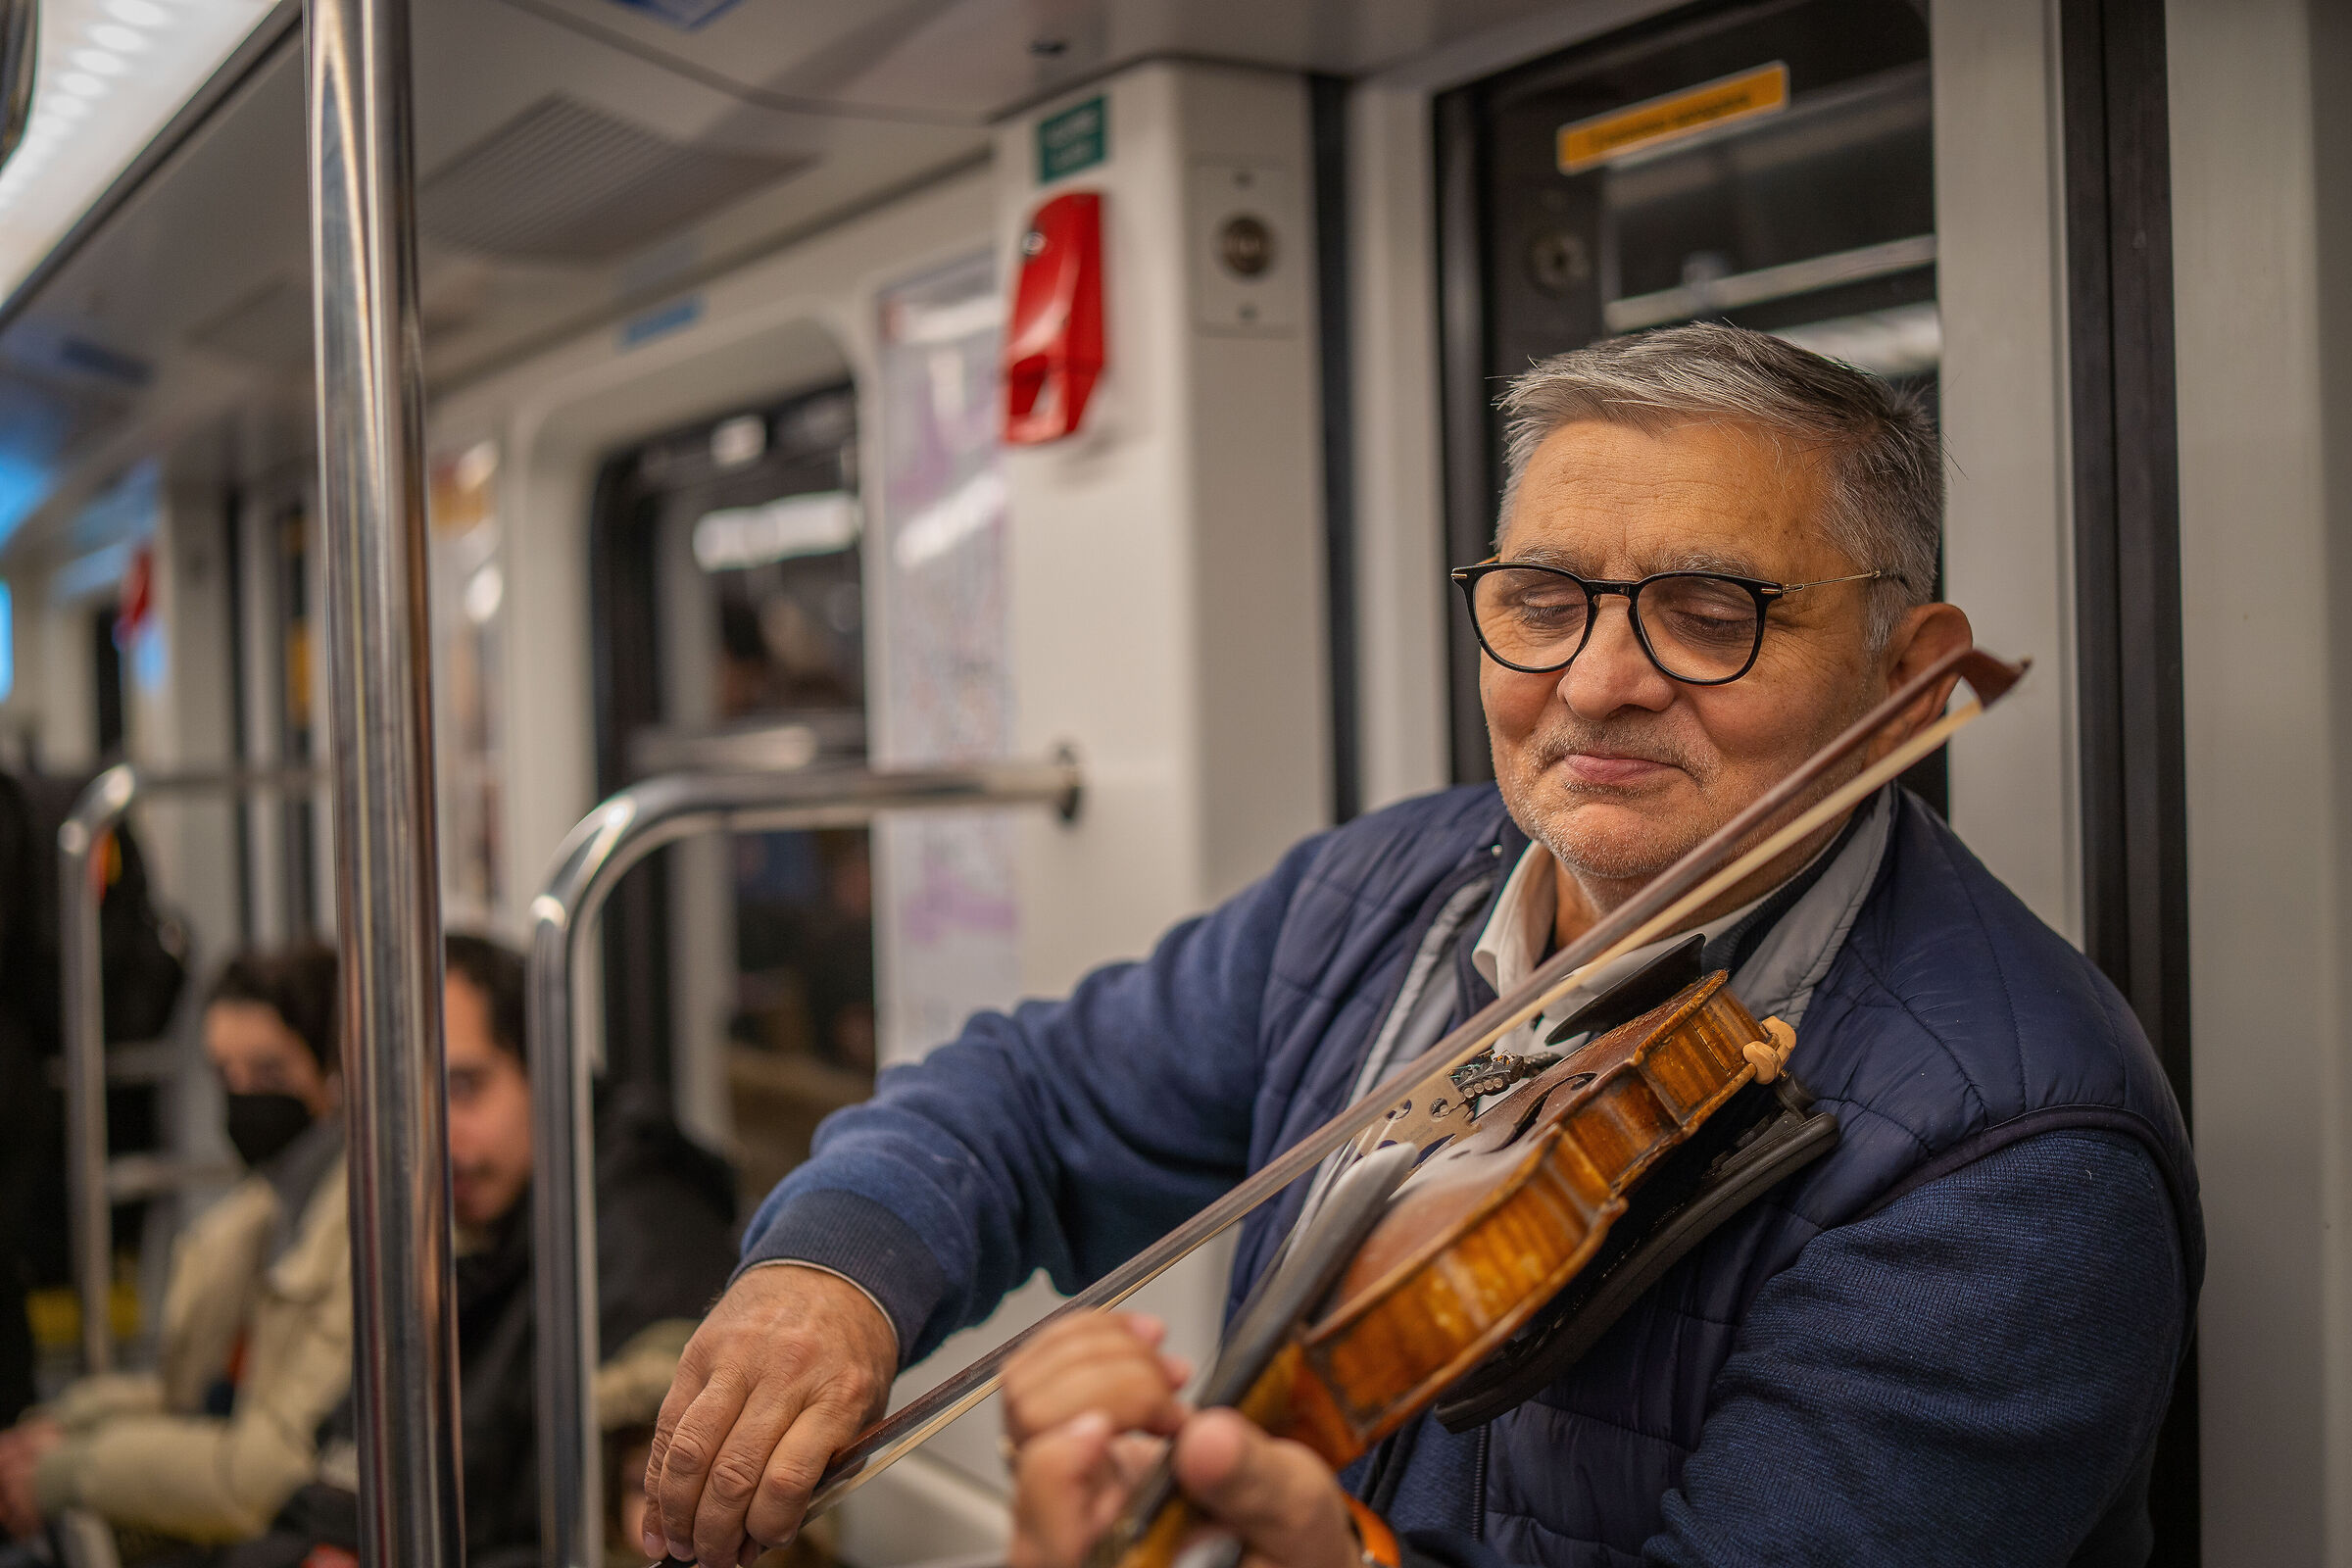 Metro Violinist...